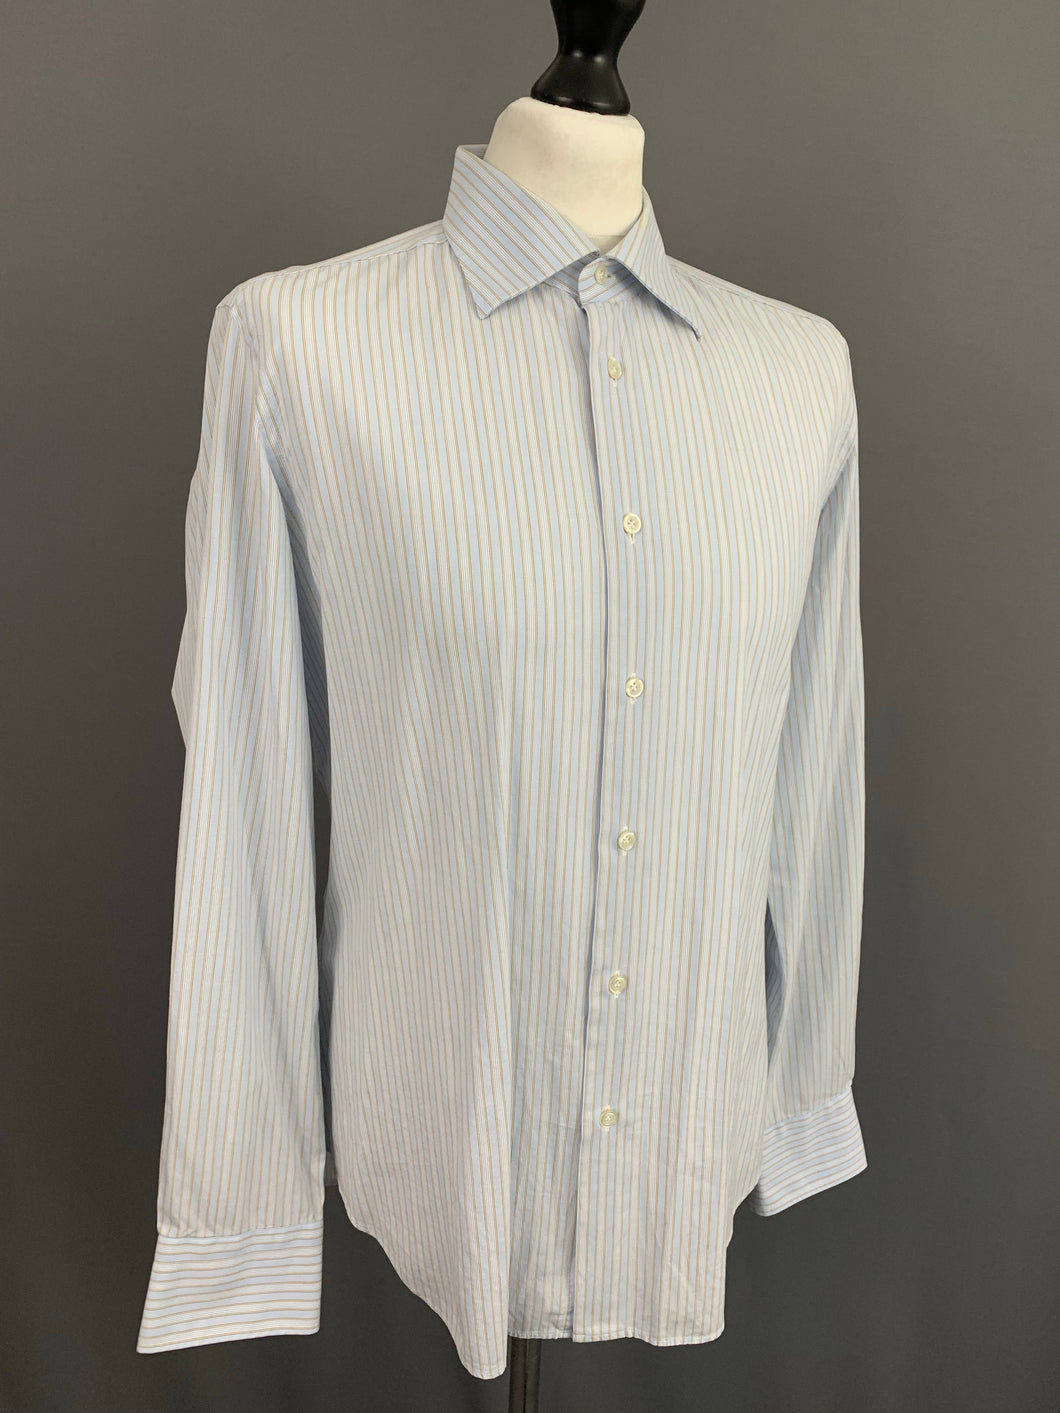 PAL ZILERI SHIRT - Blue Striped 100% Cotton - Men's Size 16